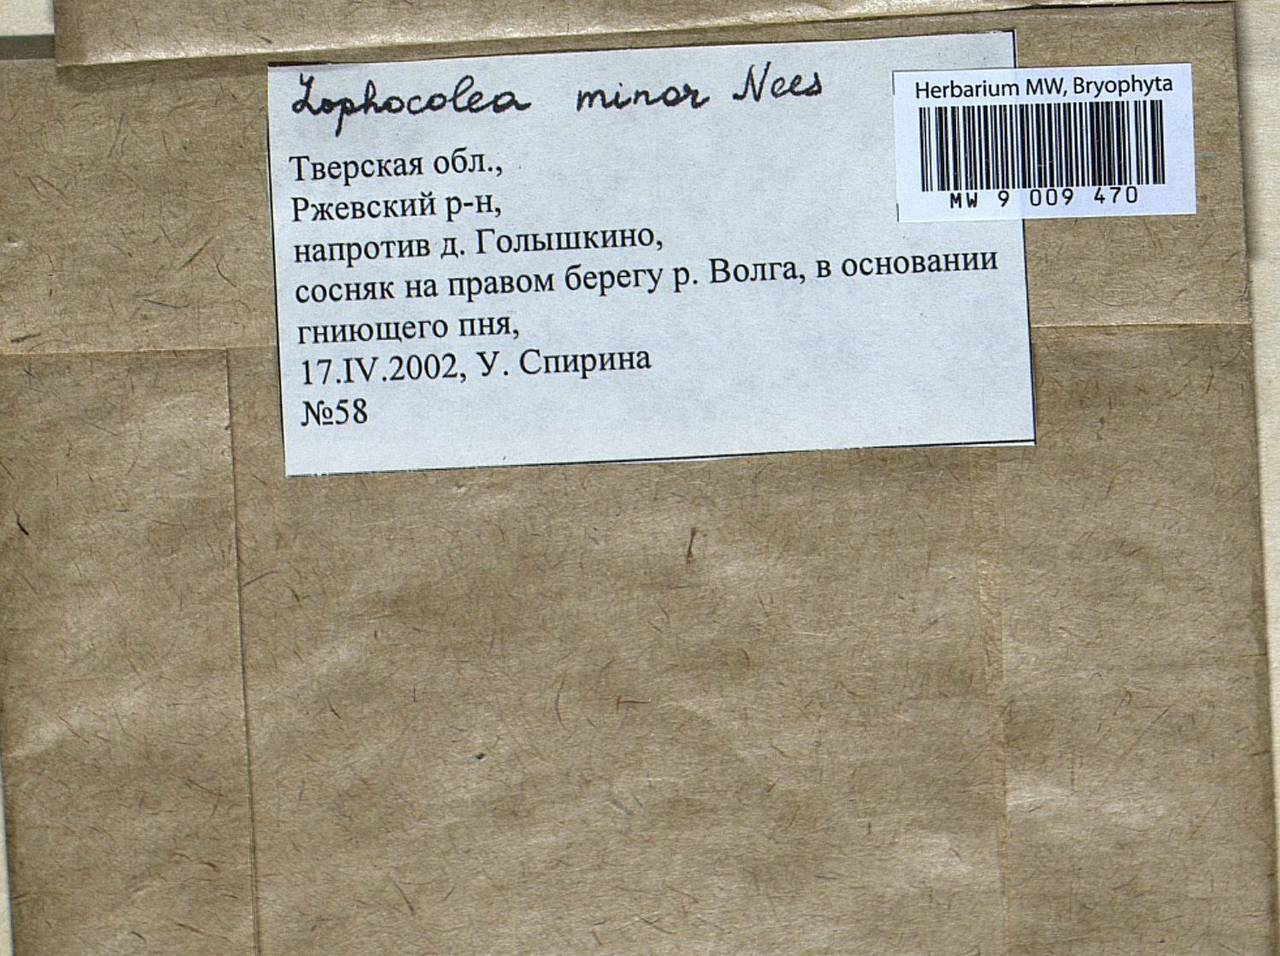 Lophocolea minor Nees, Bryophytes, Bryophytes - Middle Russia (B6) (Russia)